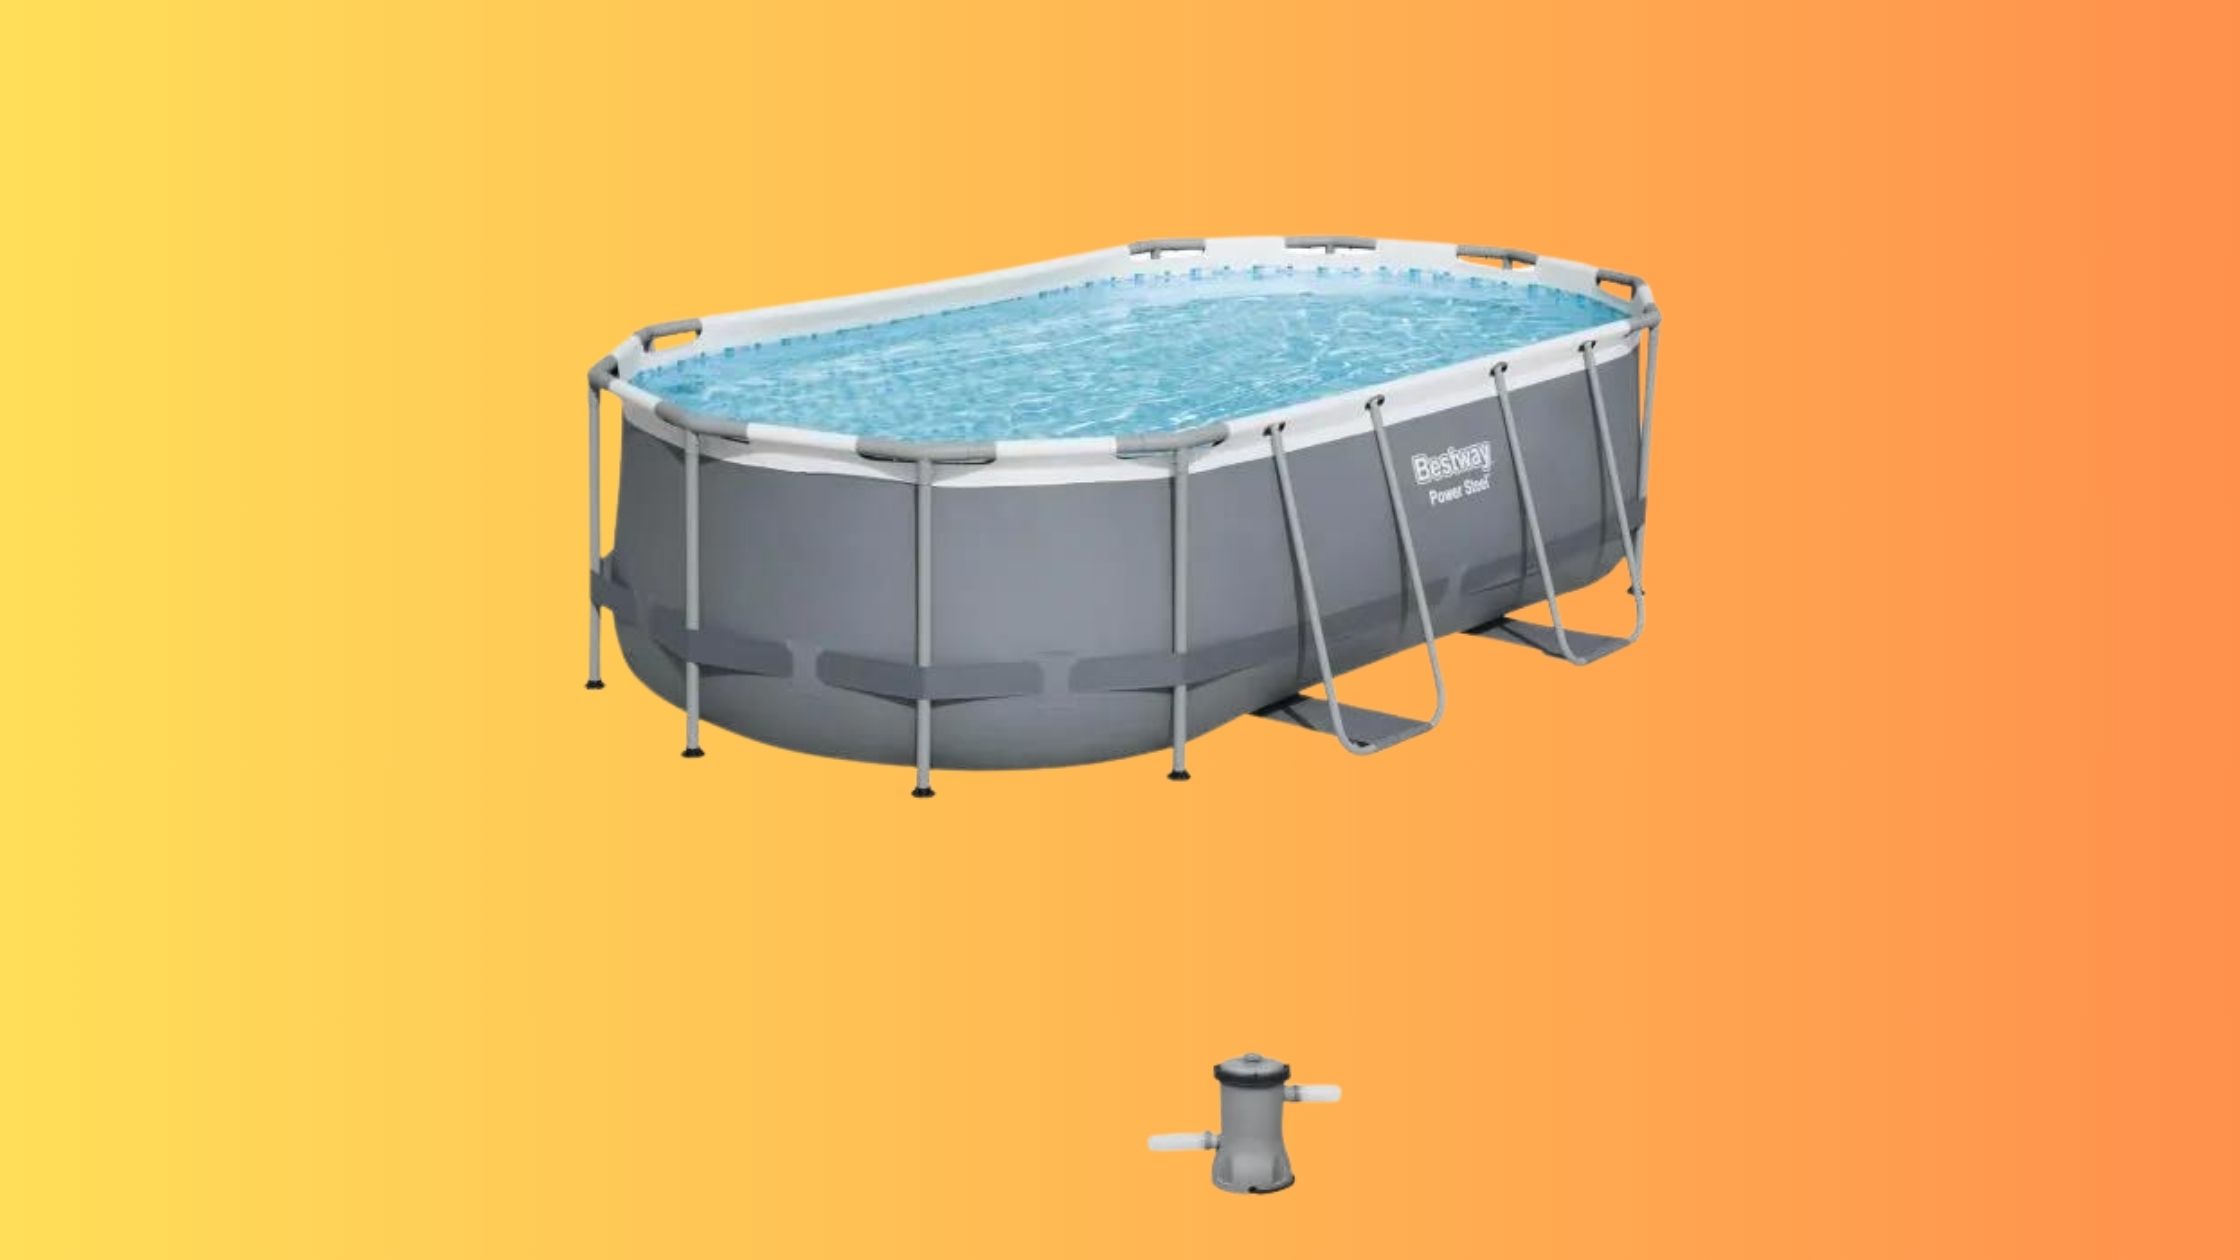 La piscine hors sol tubulaire BESTWAY Power Steel est à bas prix sur ce site de vente en ligne © Cdiscount